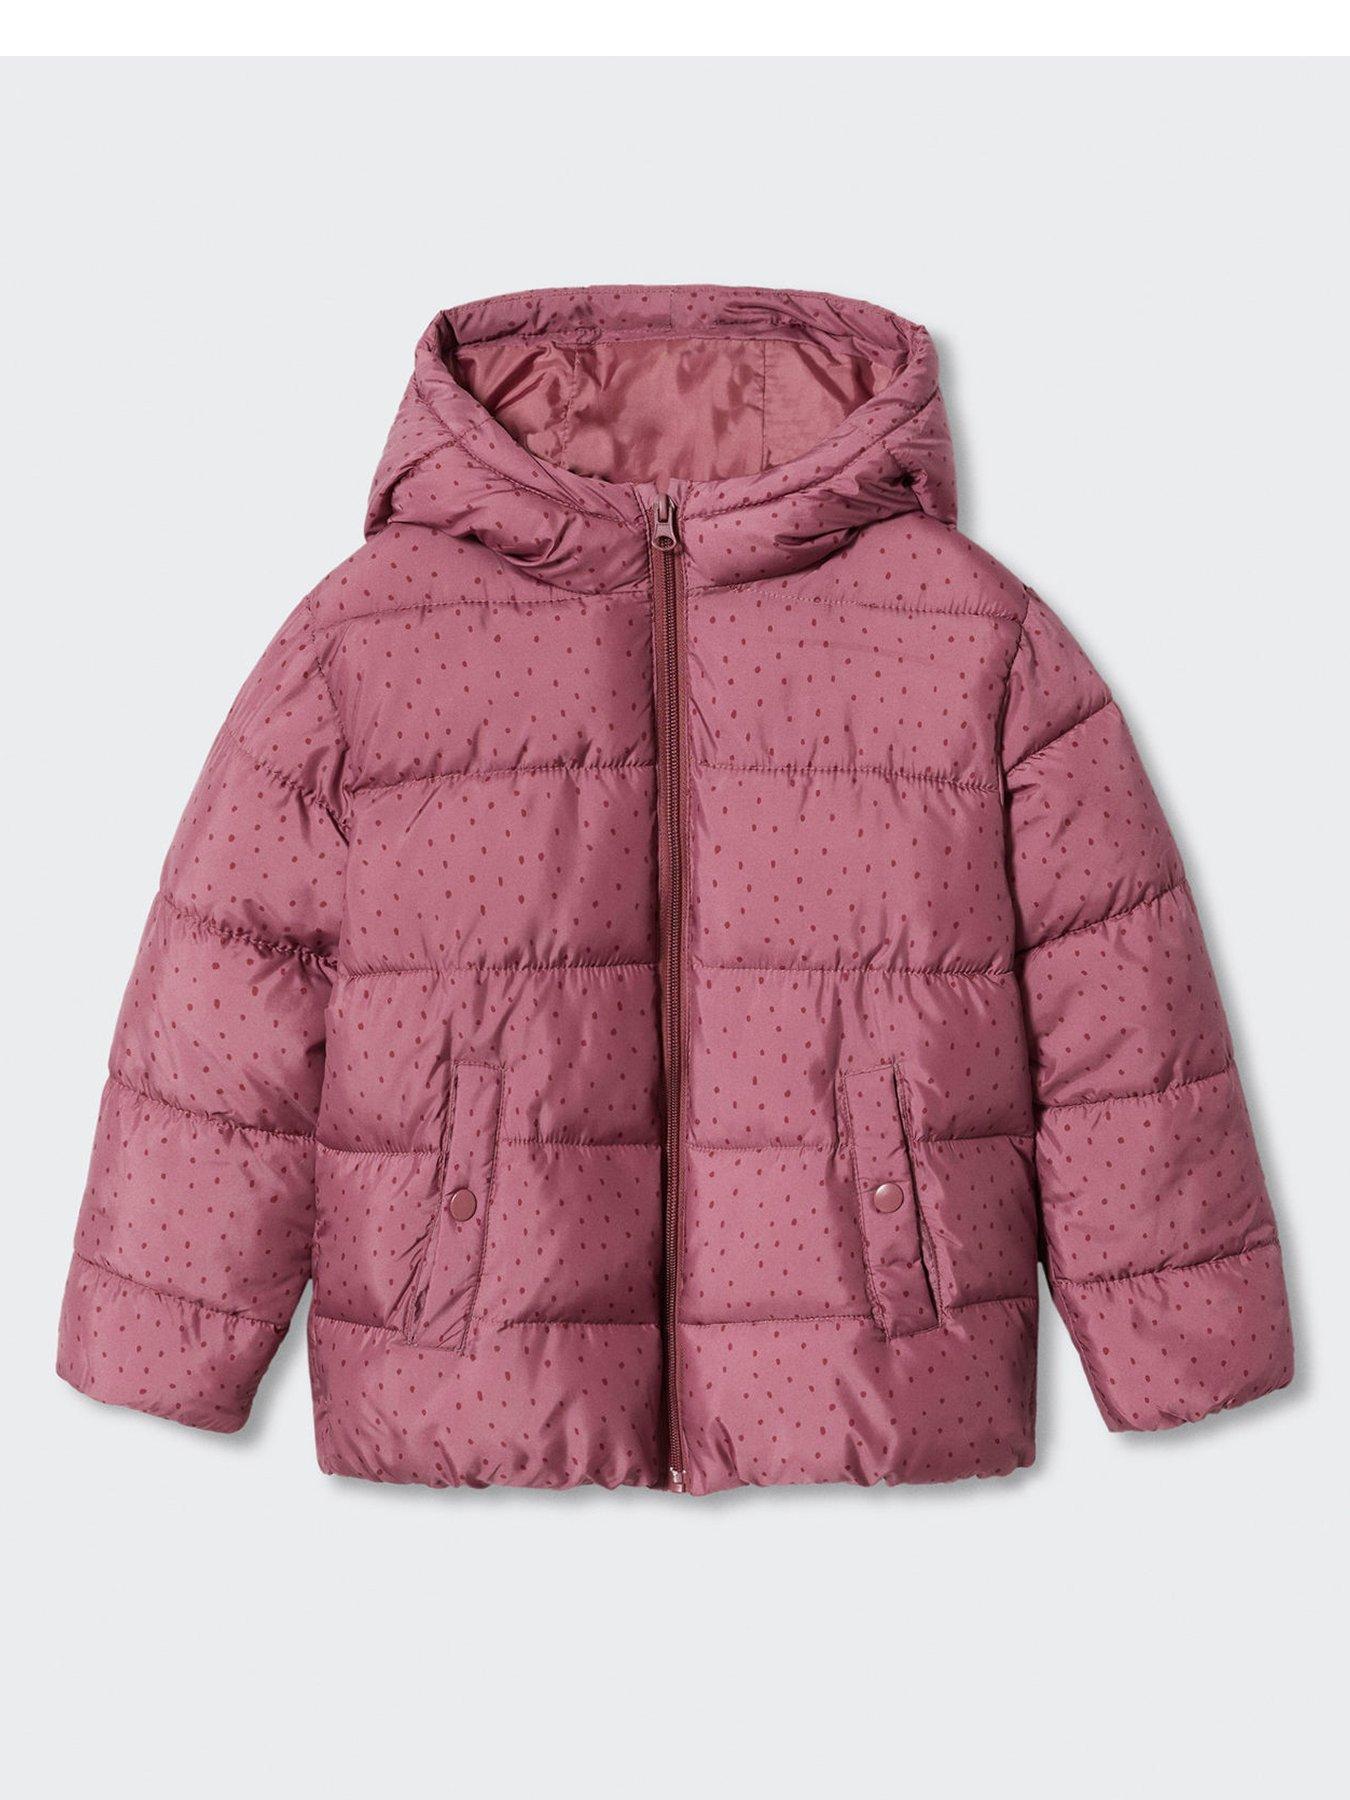 SZSHOHXW Girls Jacket Hoodies Trench Lightweight Kids Coats Windbreaker Outwear Size 5,6,8,10,12 